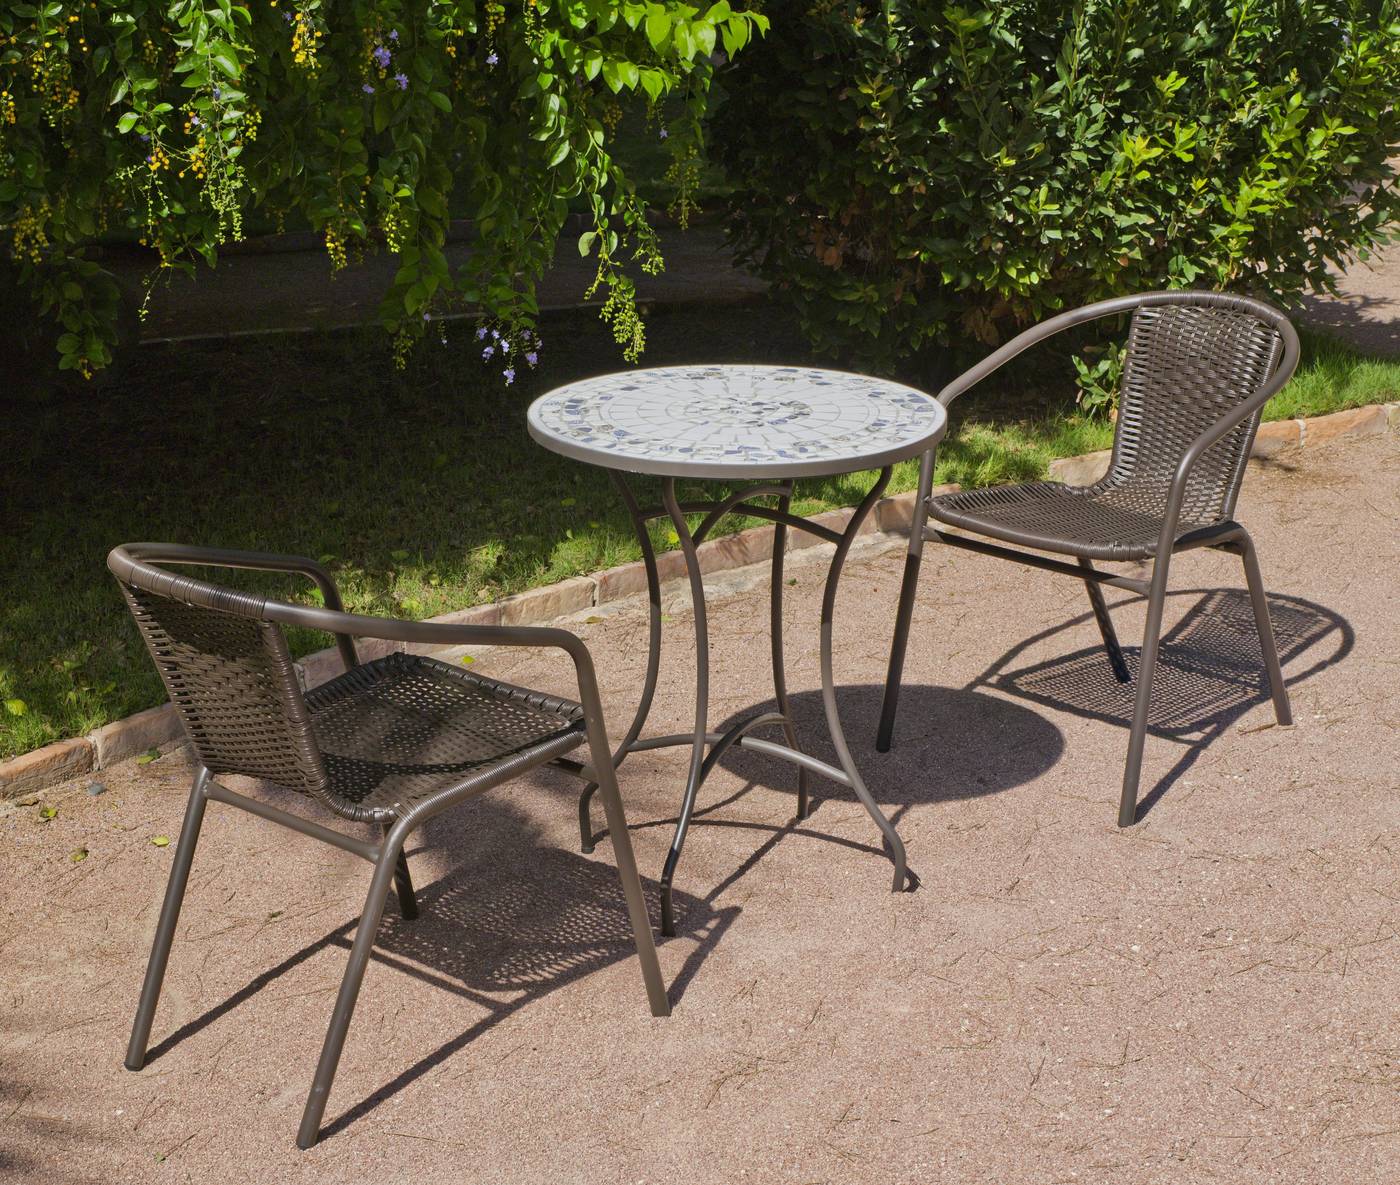 Conjunto de acero color bronce: mesa redonda de acero forjado con tablero mosaico de 60 cm. + 2 sillones apilables de wicker reforzado